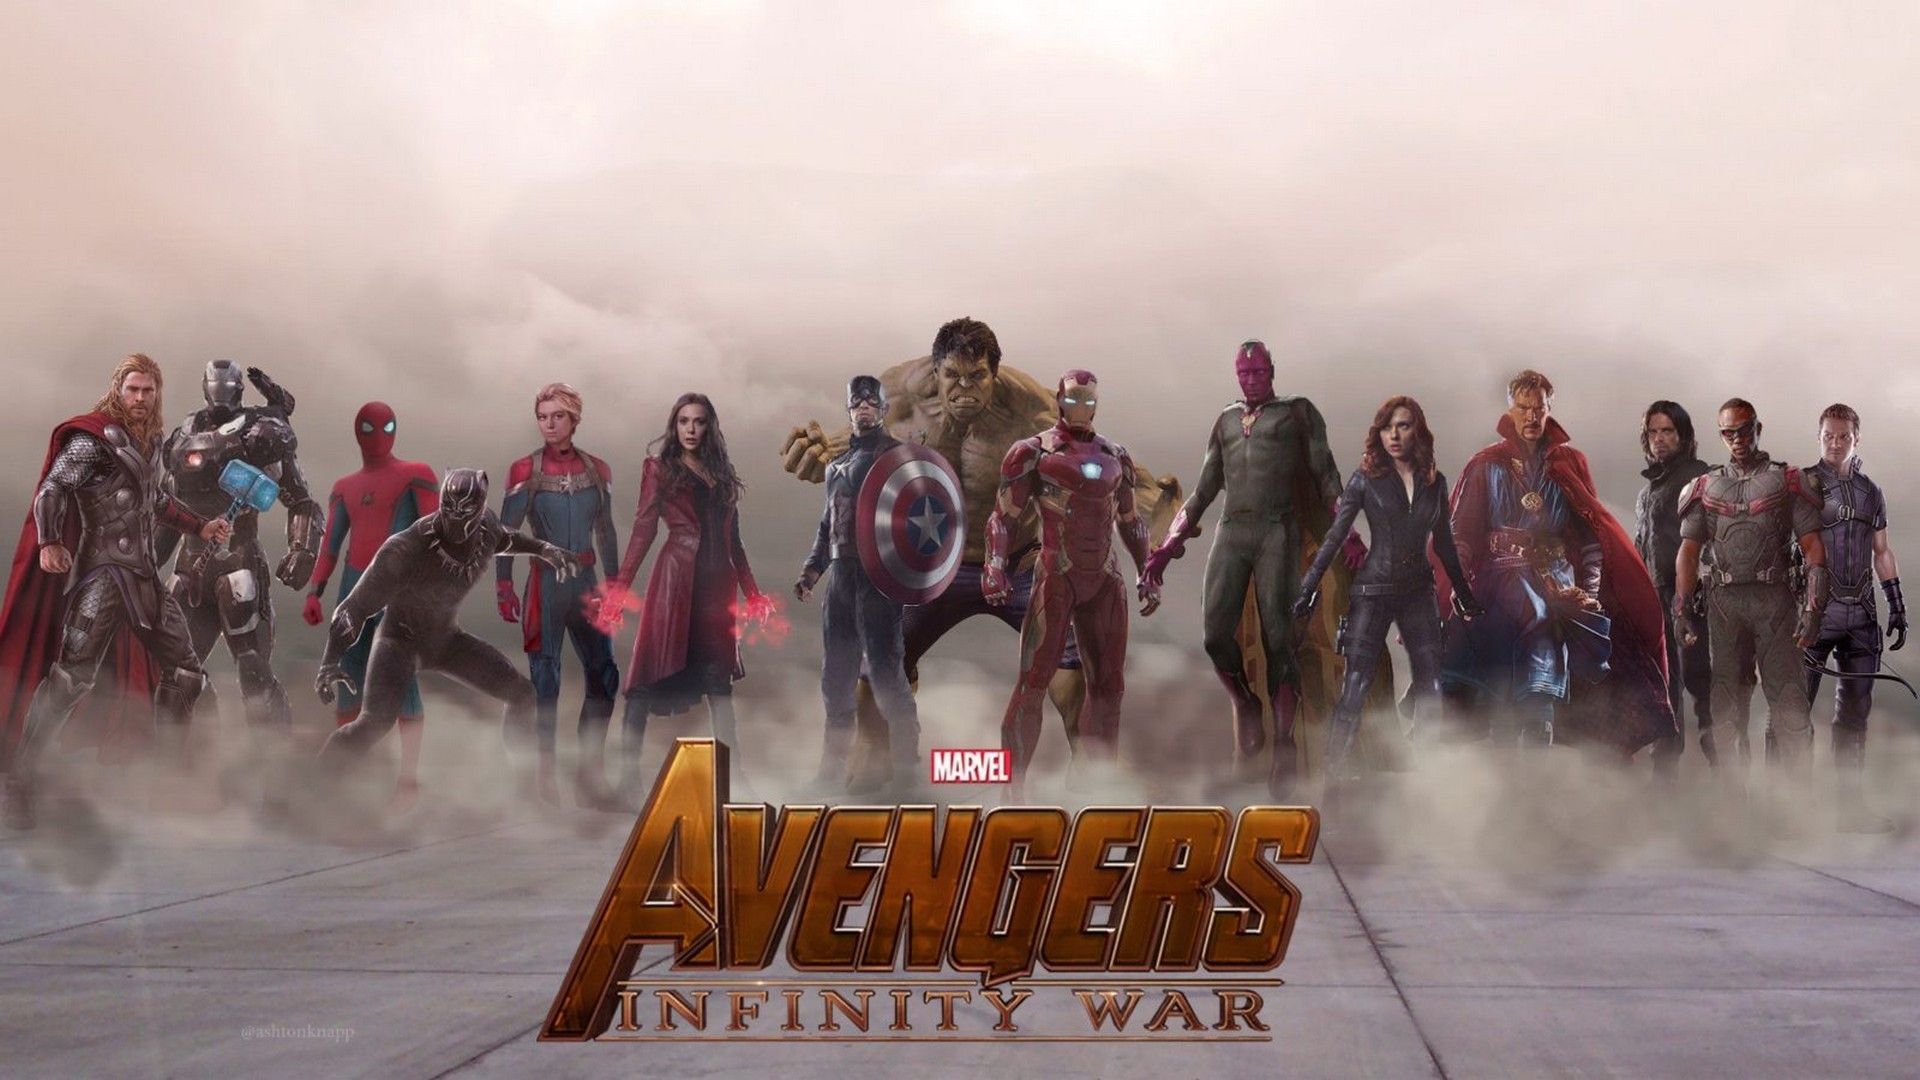 Avengers Infinity War , HD Wallpaper & Backgrounds